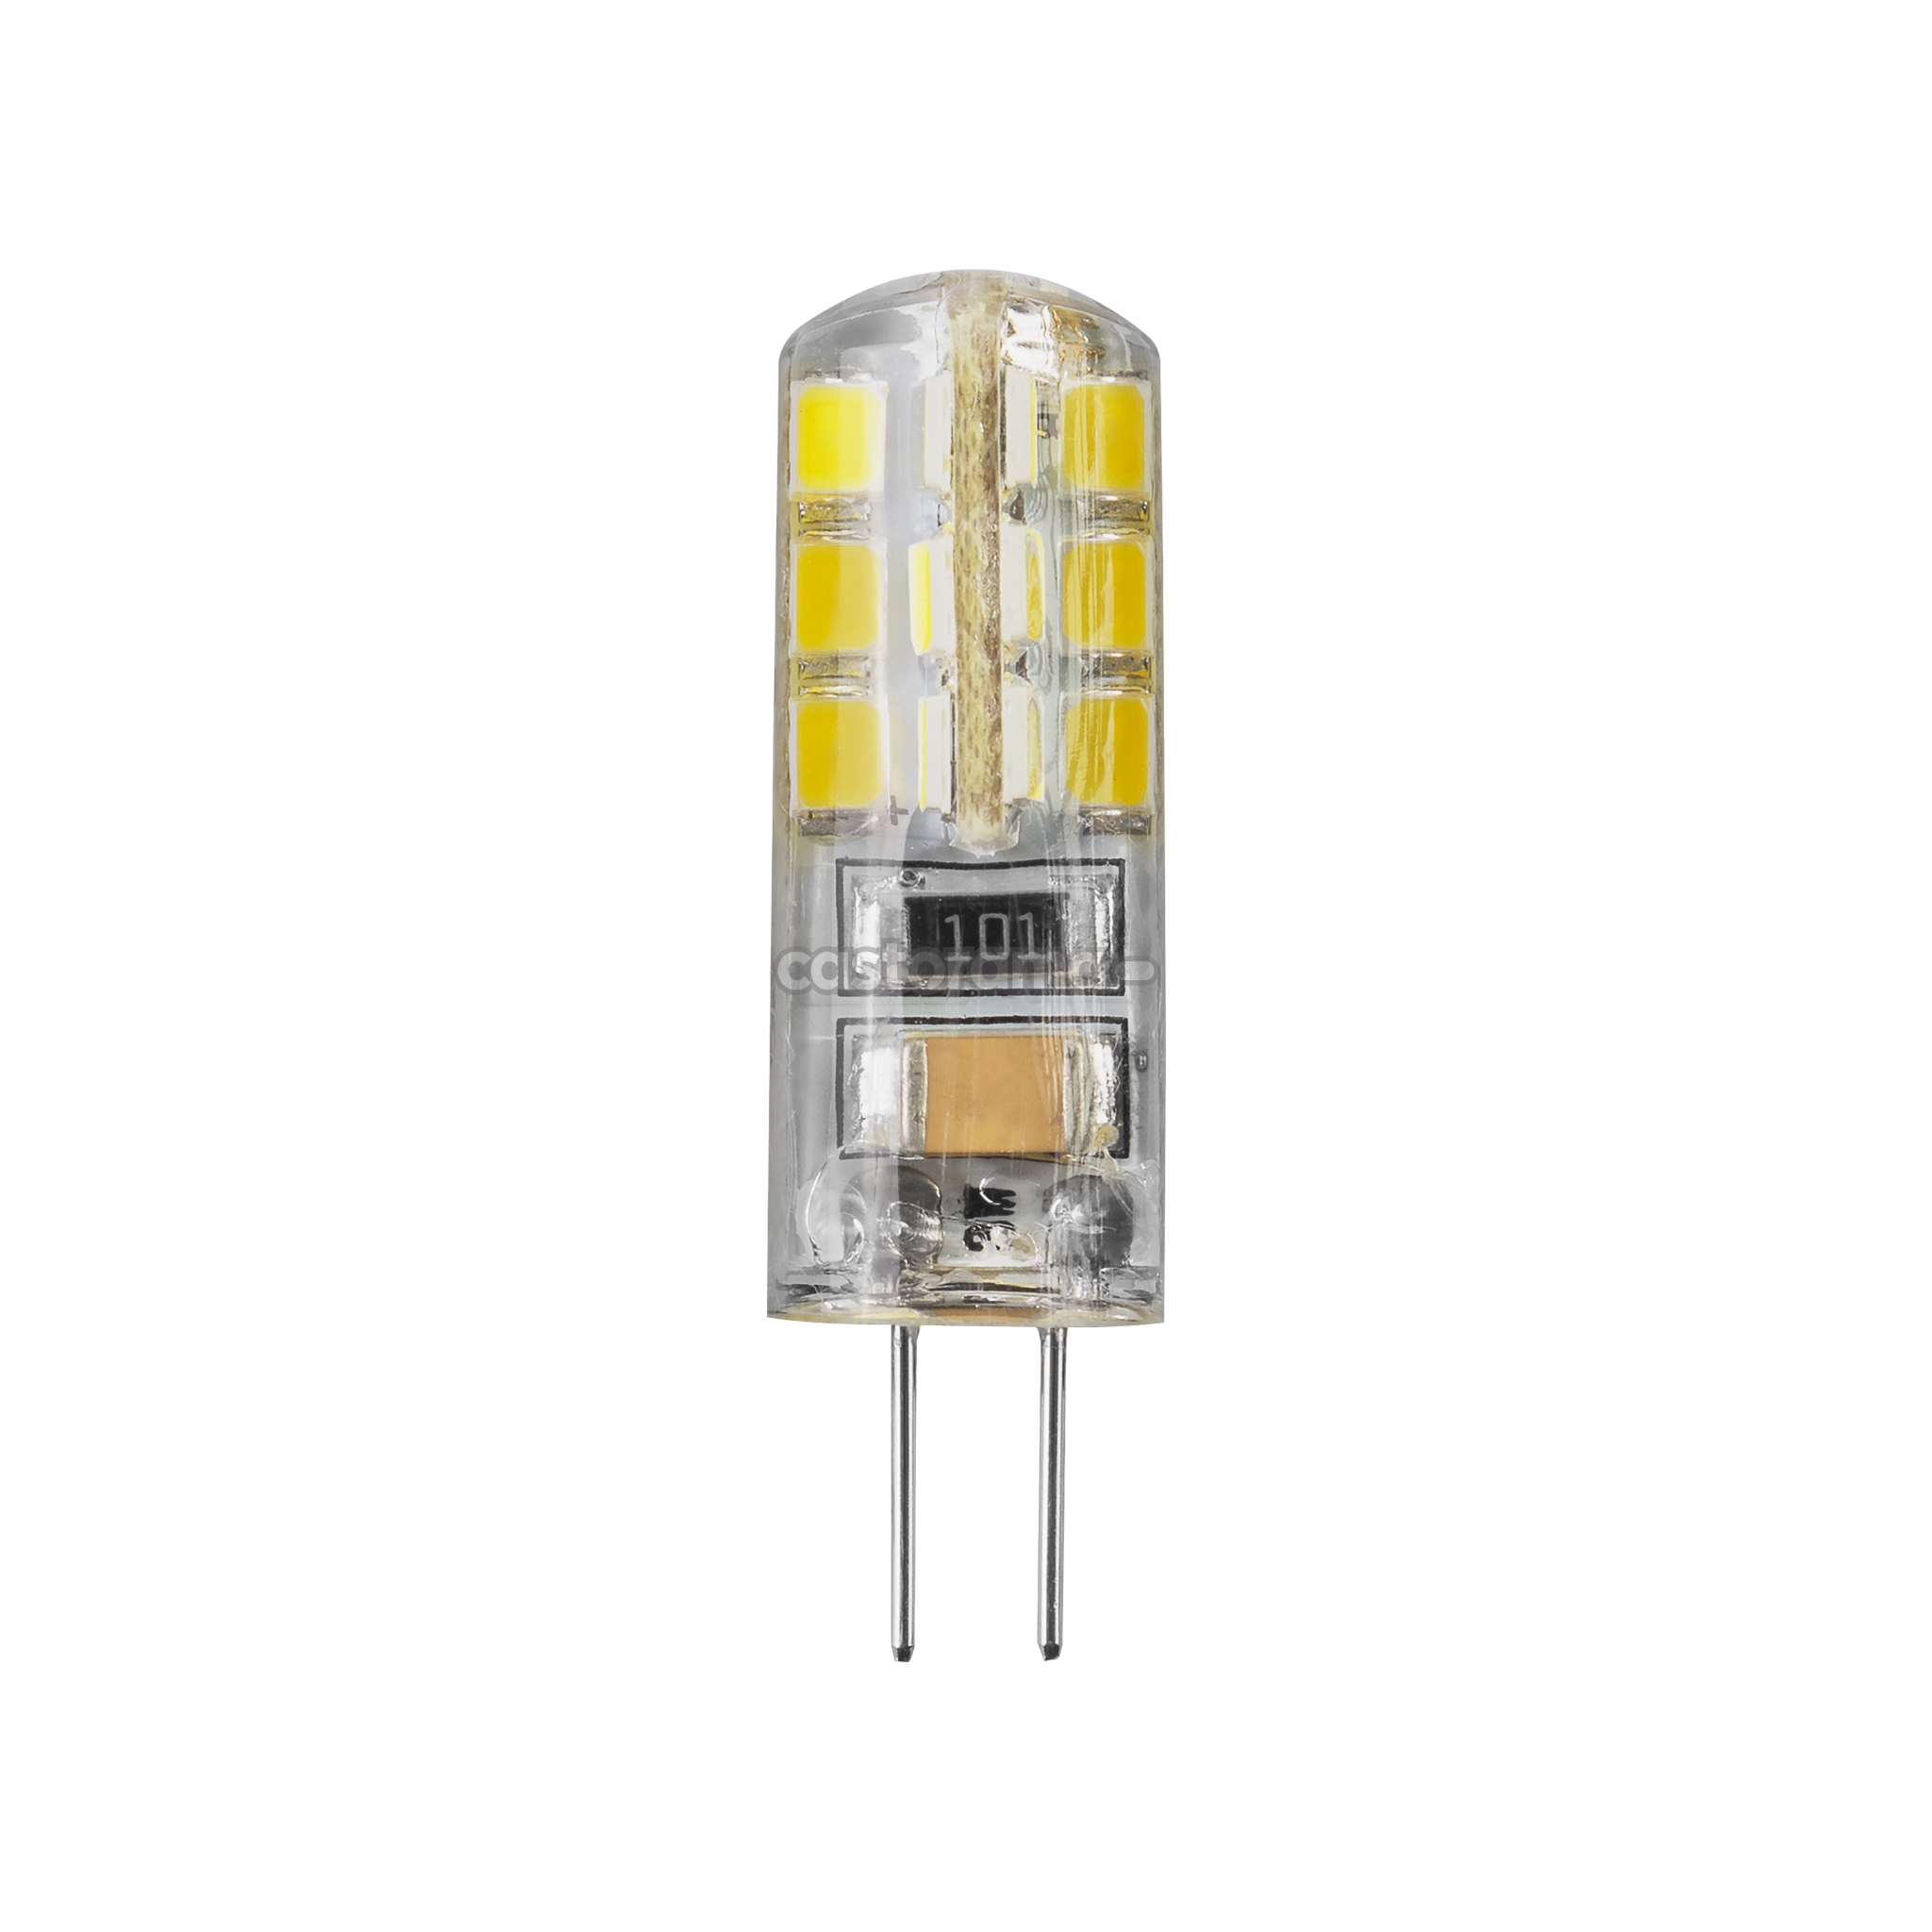 Лампа светодиодная 12в g4. G4 led 5w 220v 4200k. Лампа led-g4 5w 220v 4200k. Лампа светодиодная Navigator g4. Лампа светодиодная Ecola g4rv15elc, g4, Corn, 1.5Вт.